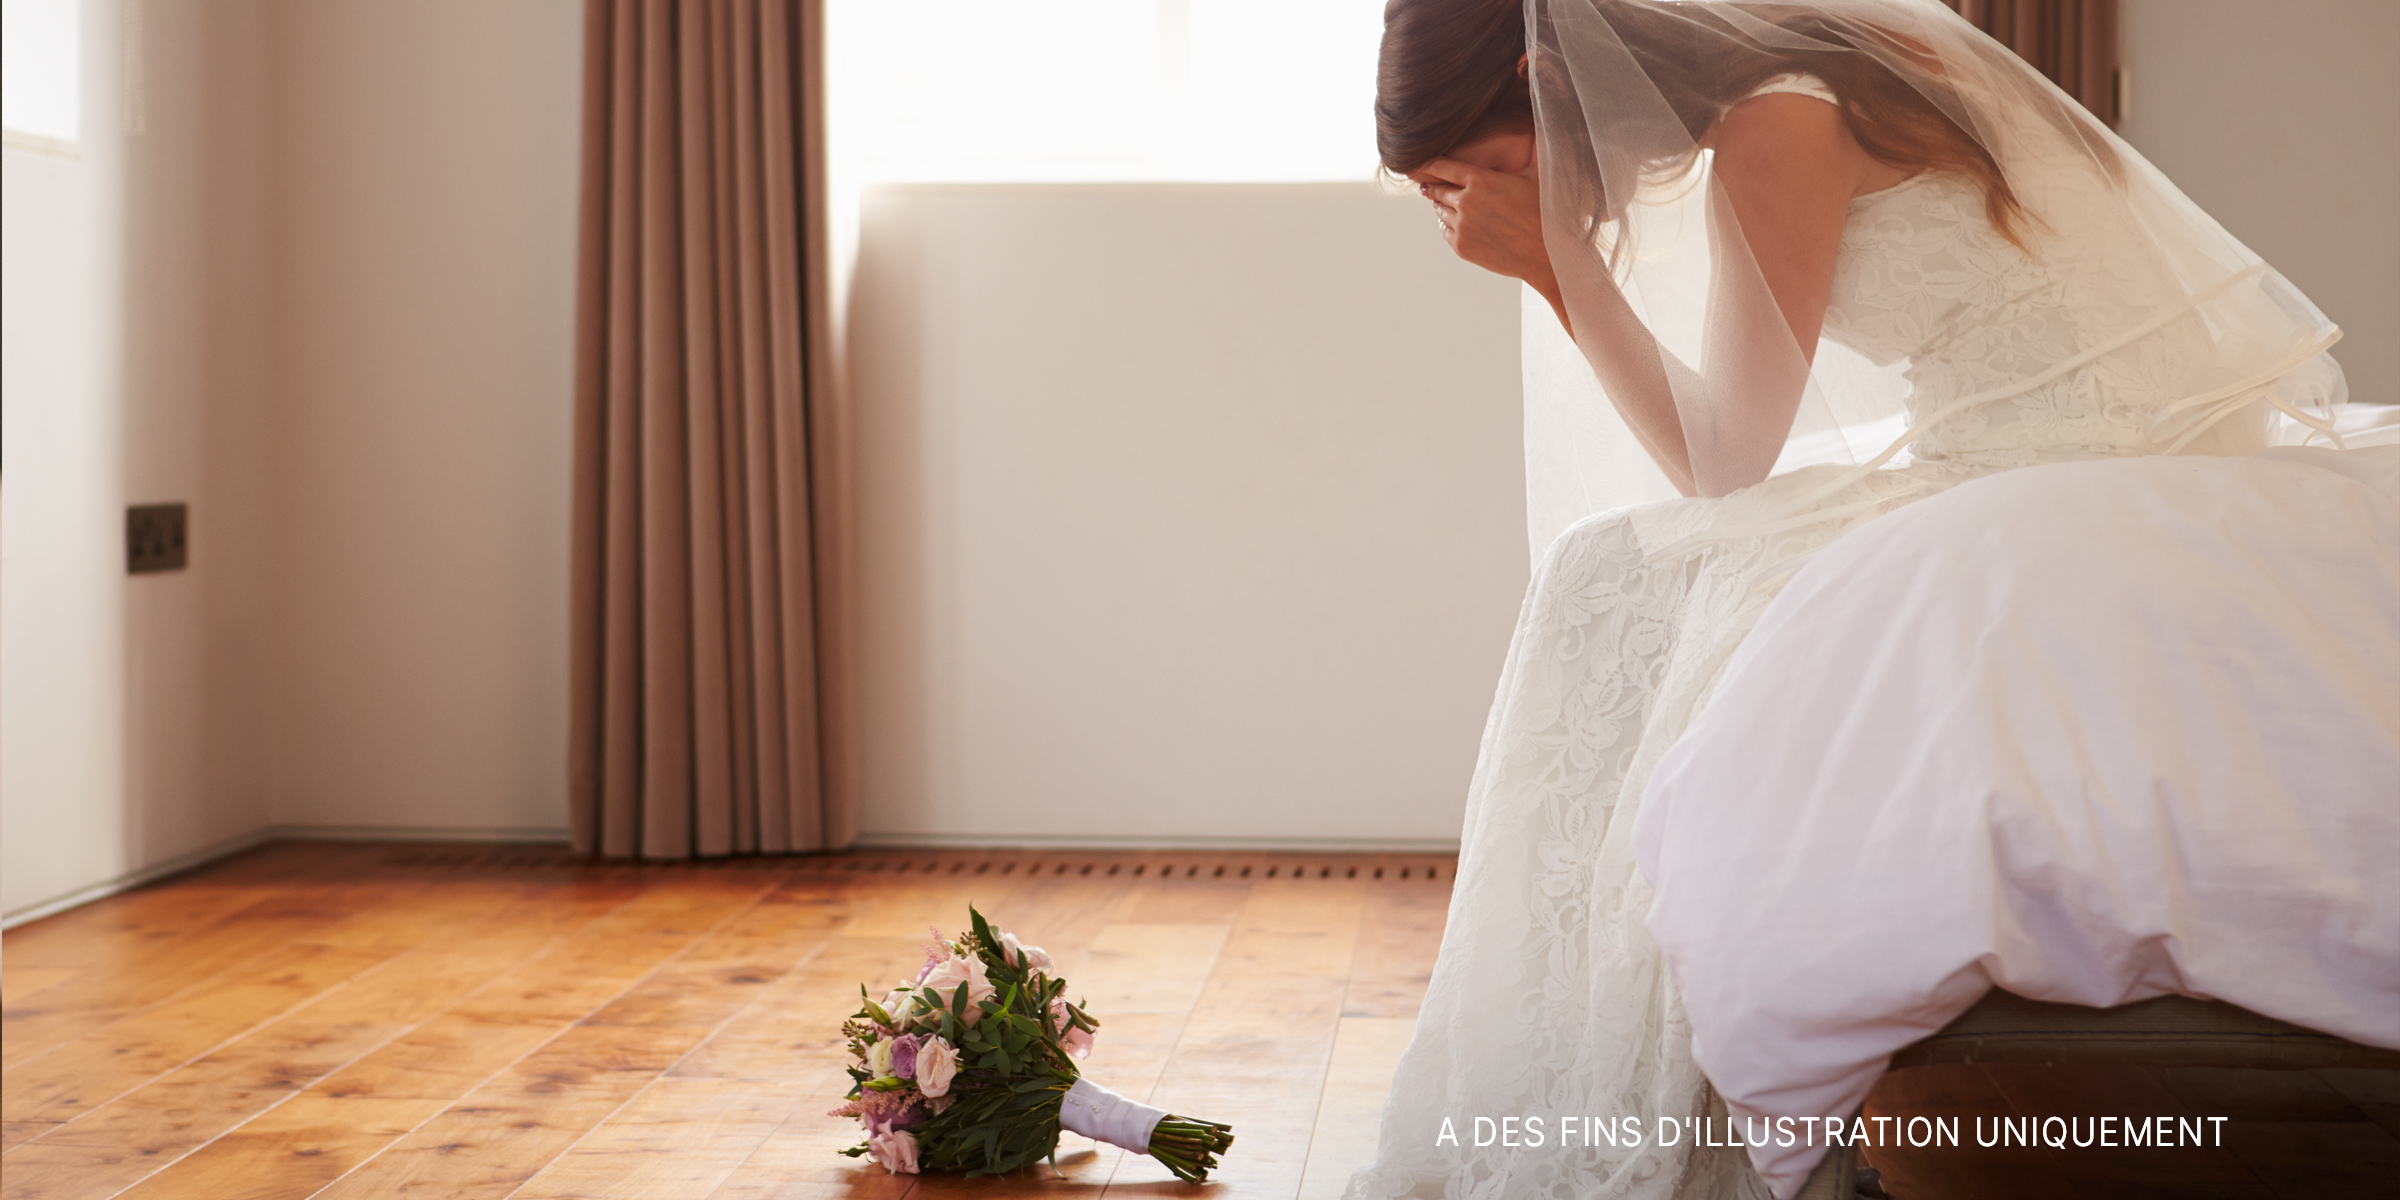 Une mariée triste | Source : Getty Images